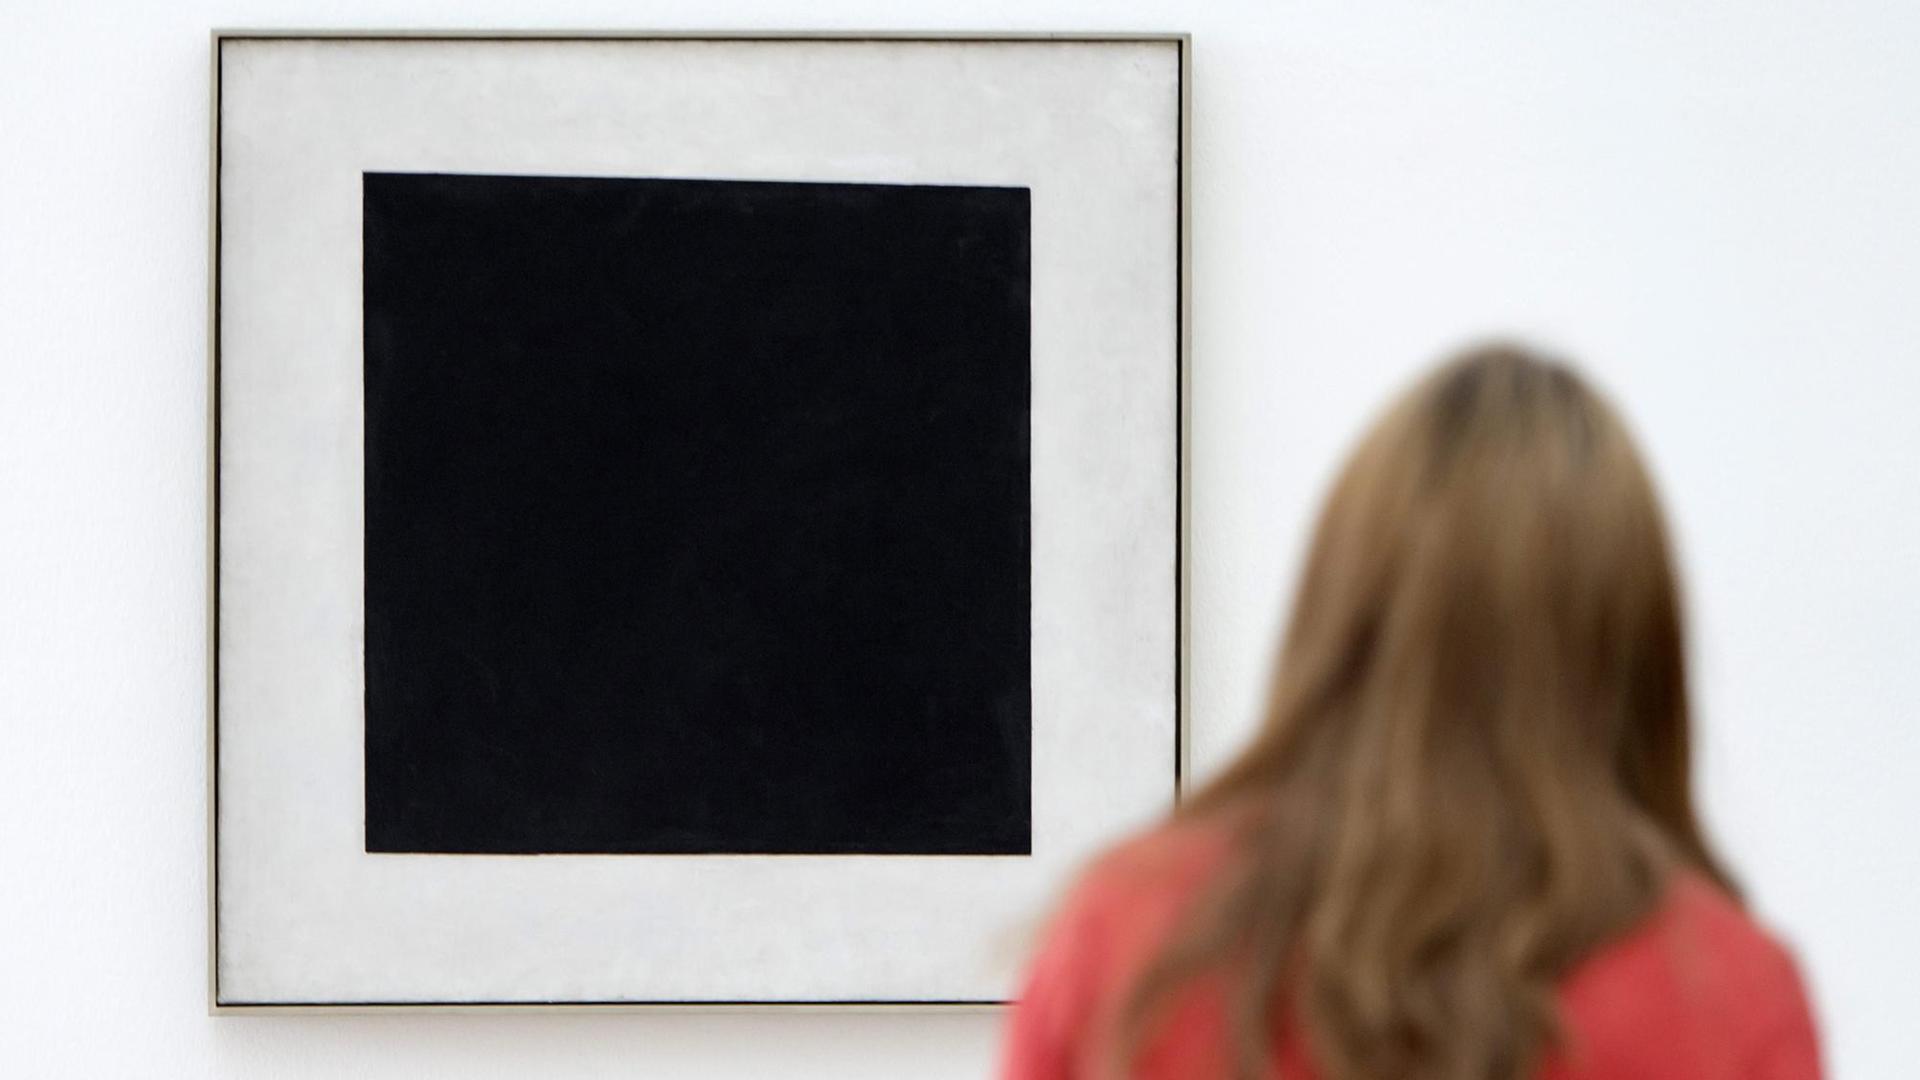 Eine Besucherin betrachtet in der Ausstellung "Auf der Suche nach 0,10" das Werk "Schwarzes Quadrat" von dem russischen Künstler Kasimir Malewitsch.